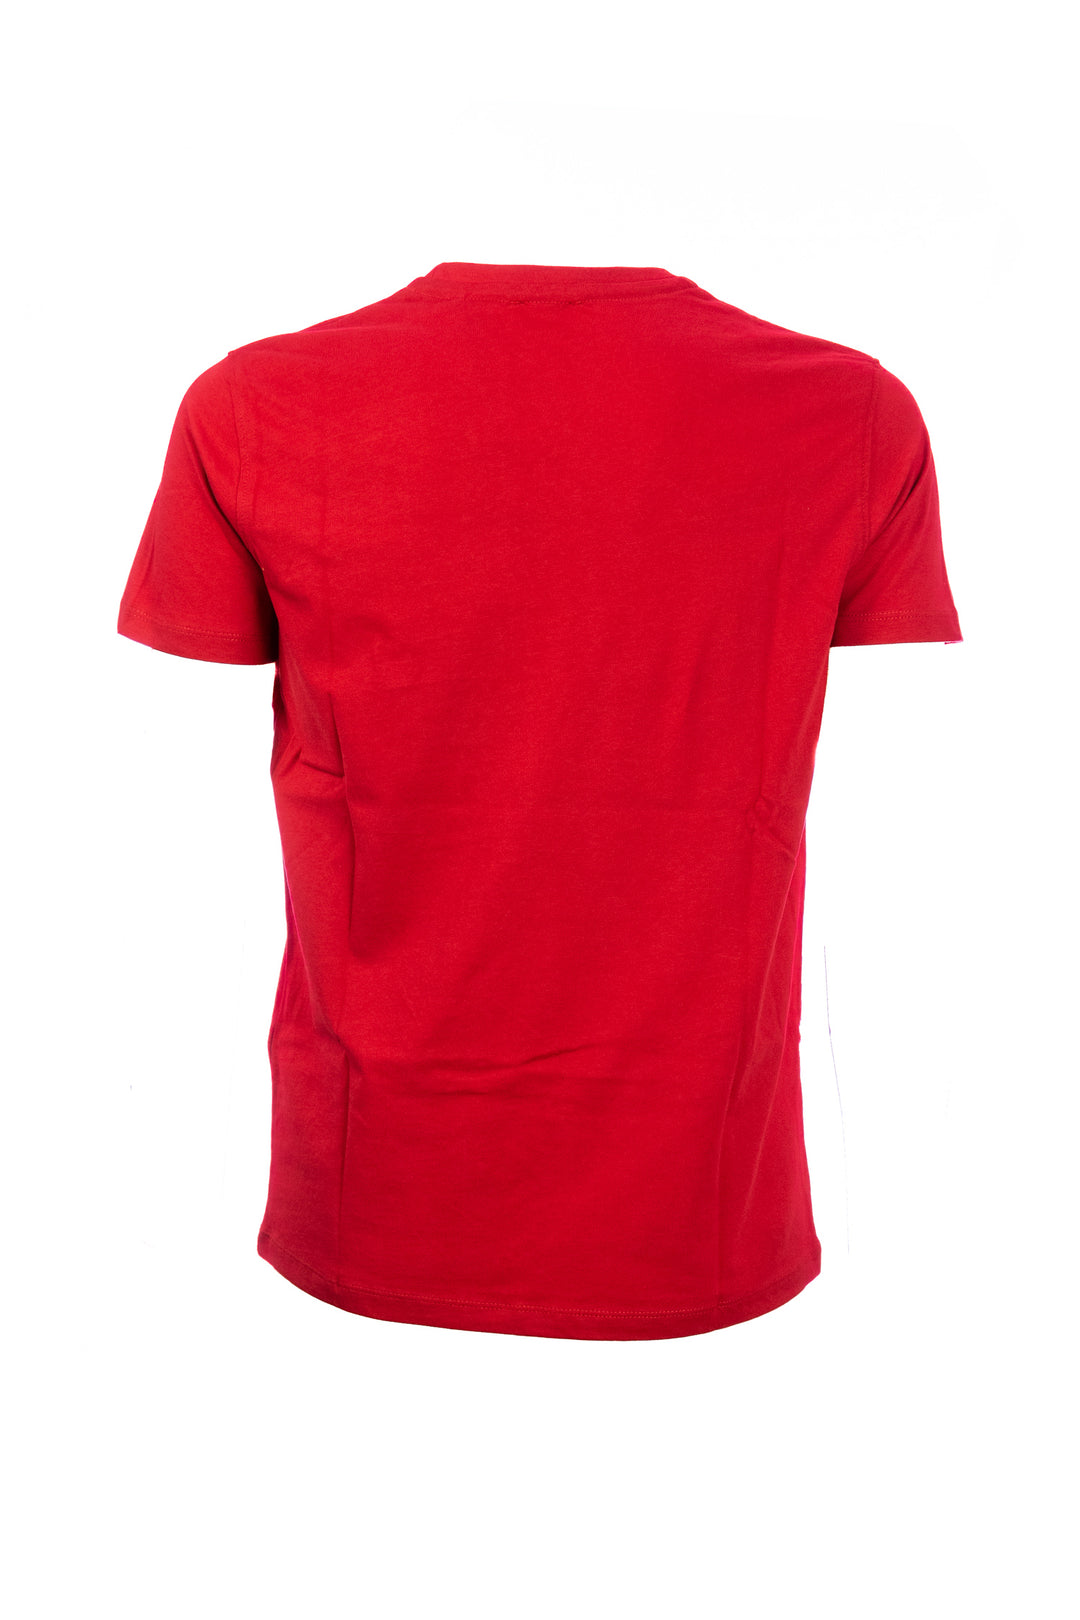 U.S. POLO ASSN. T-shirt rossa in cotone con scritta U.S. Polo Assn. ricamato sul petto - Mancinelli 1954